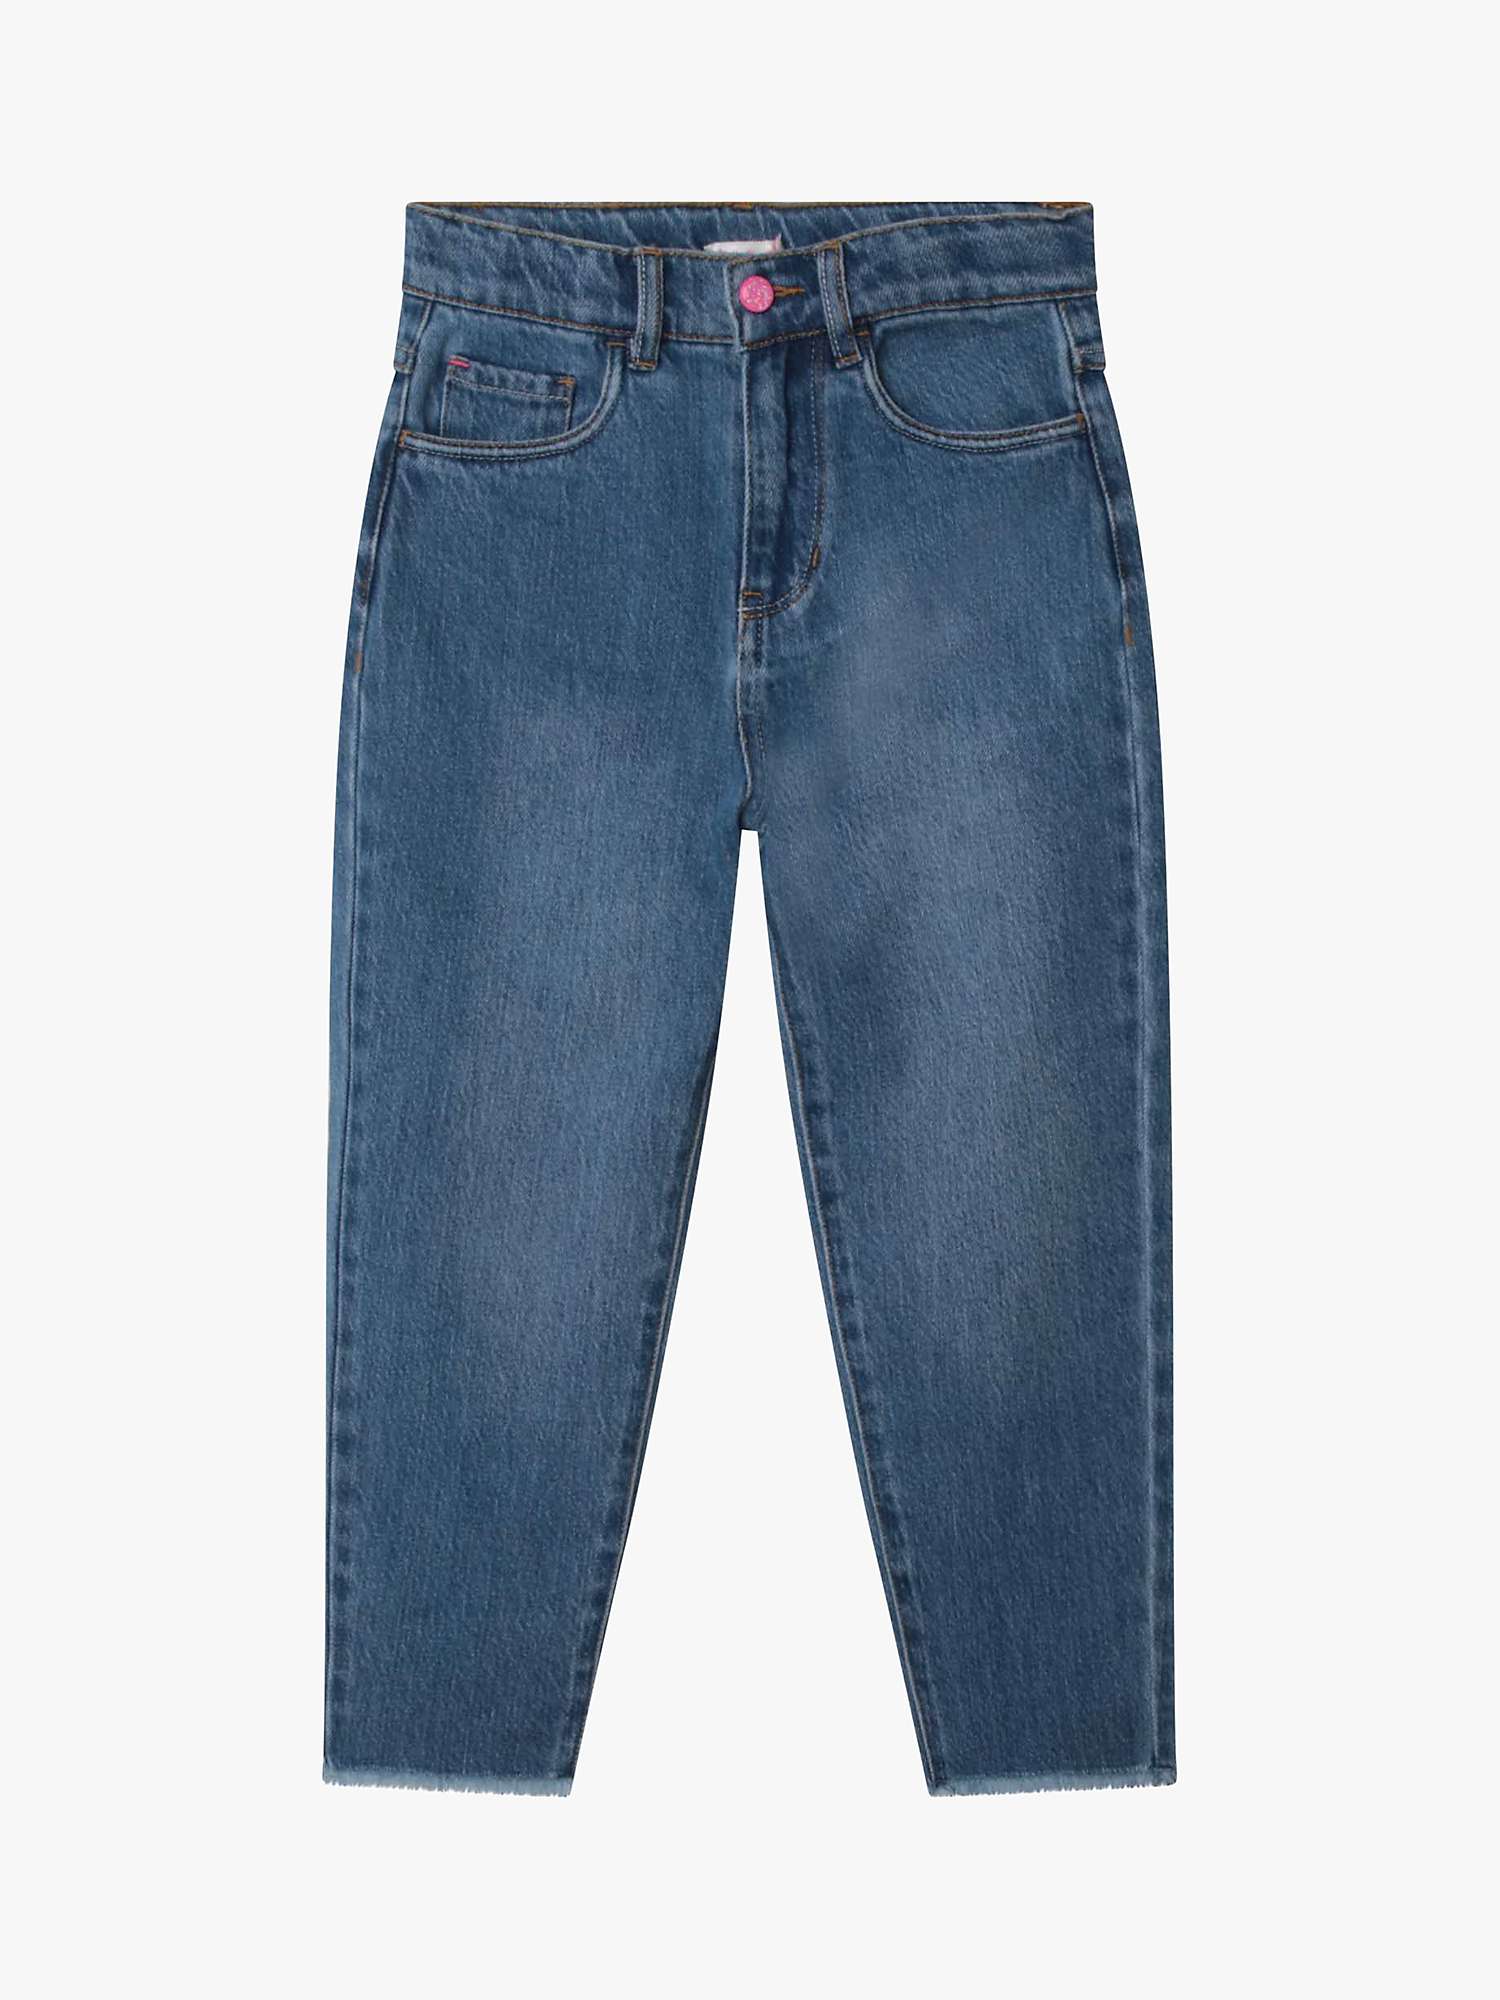 Buy Billieblush Girl's Denim Heart Jeans, Blue Online at johnlewis.com